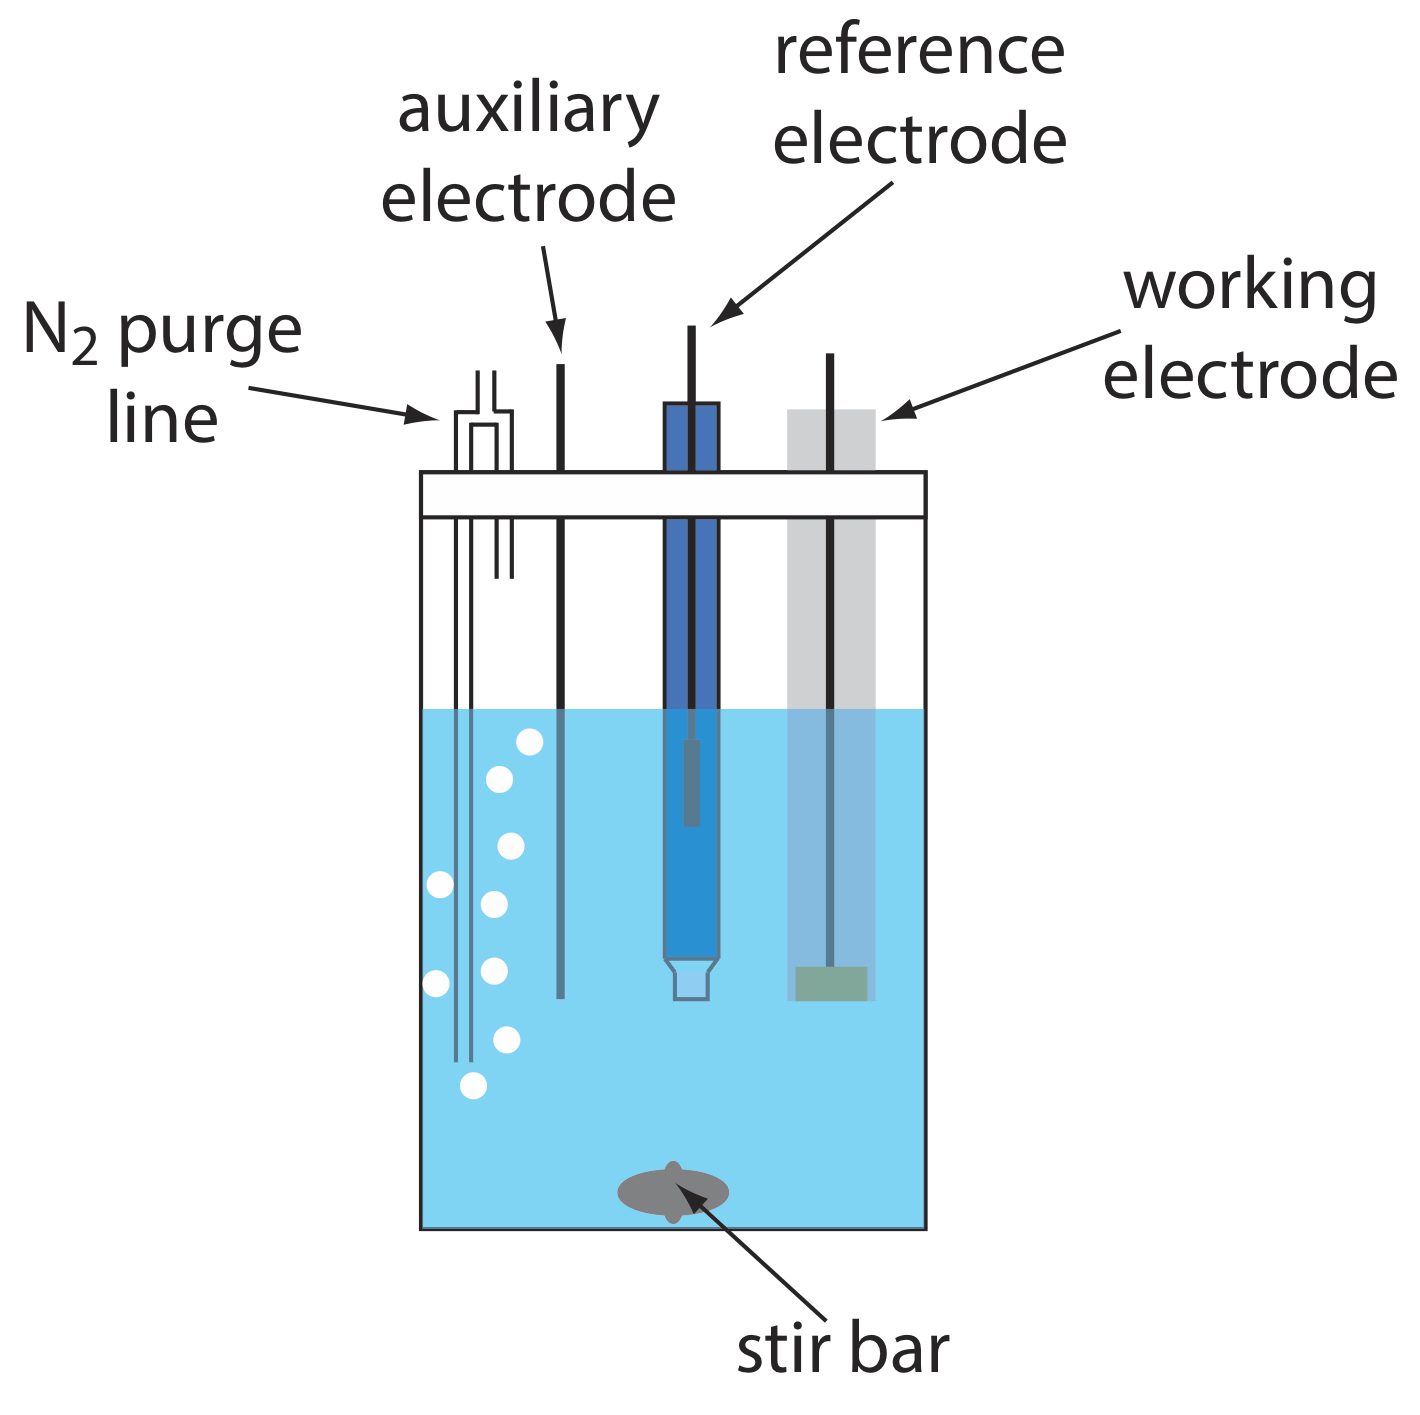 La celda electroquímica consiste en un vaso de precipitados con una barra de agitación en su interior, una línea de purga de N2, un electrodo auxiliar, un electrodo de referencia y un electrodo de trabajo que están todos suspendidos alrededor de la barra de agitación en el vaso de precipitados.